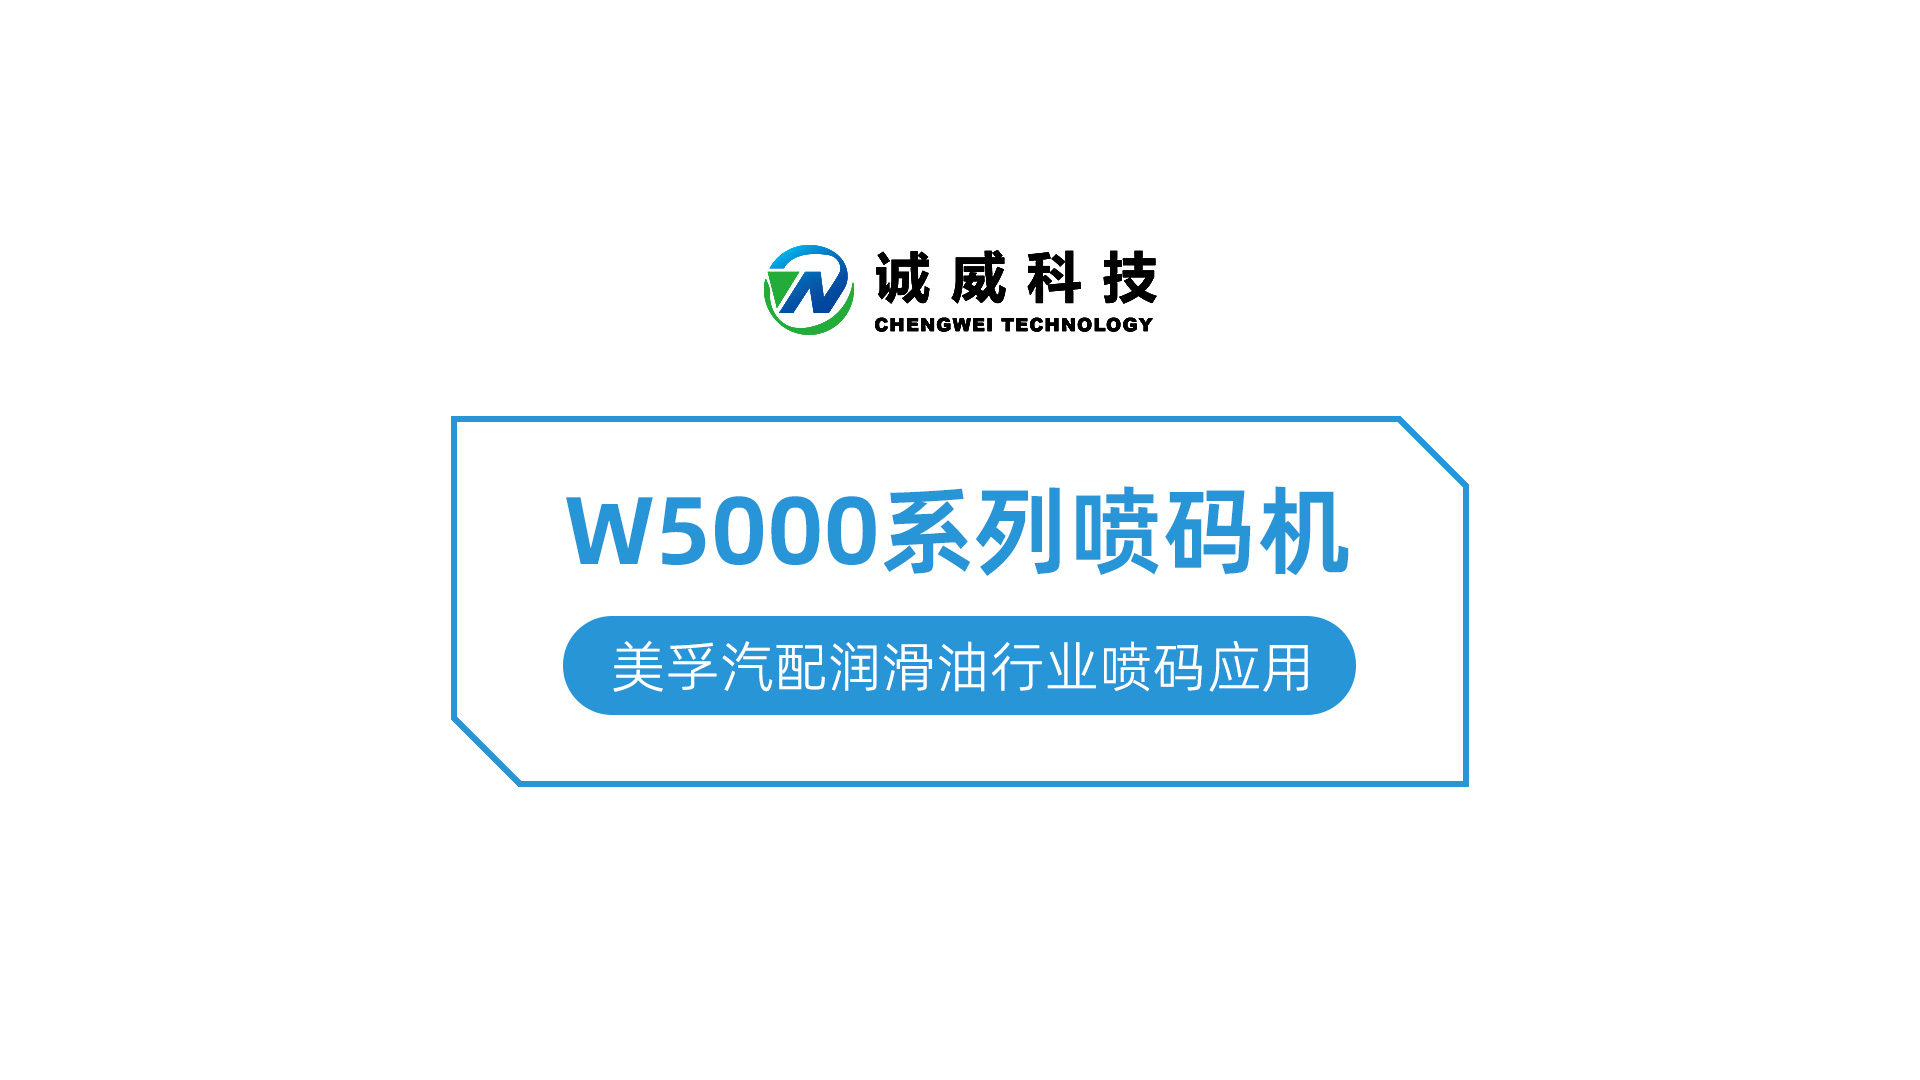 W5000系列喷码机-美孚汽配润滑油行业喷码应用.jpg